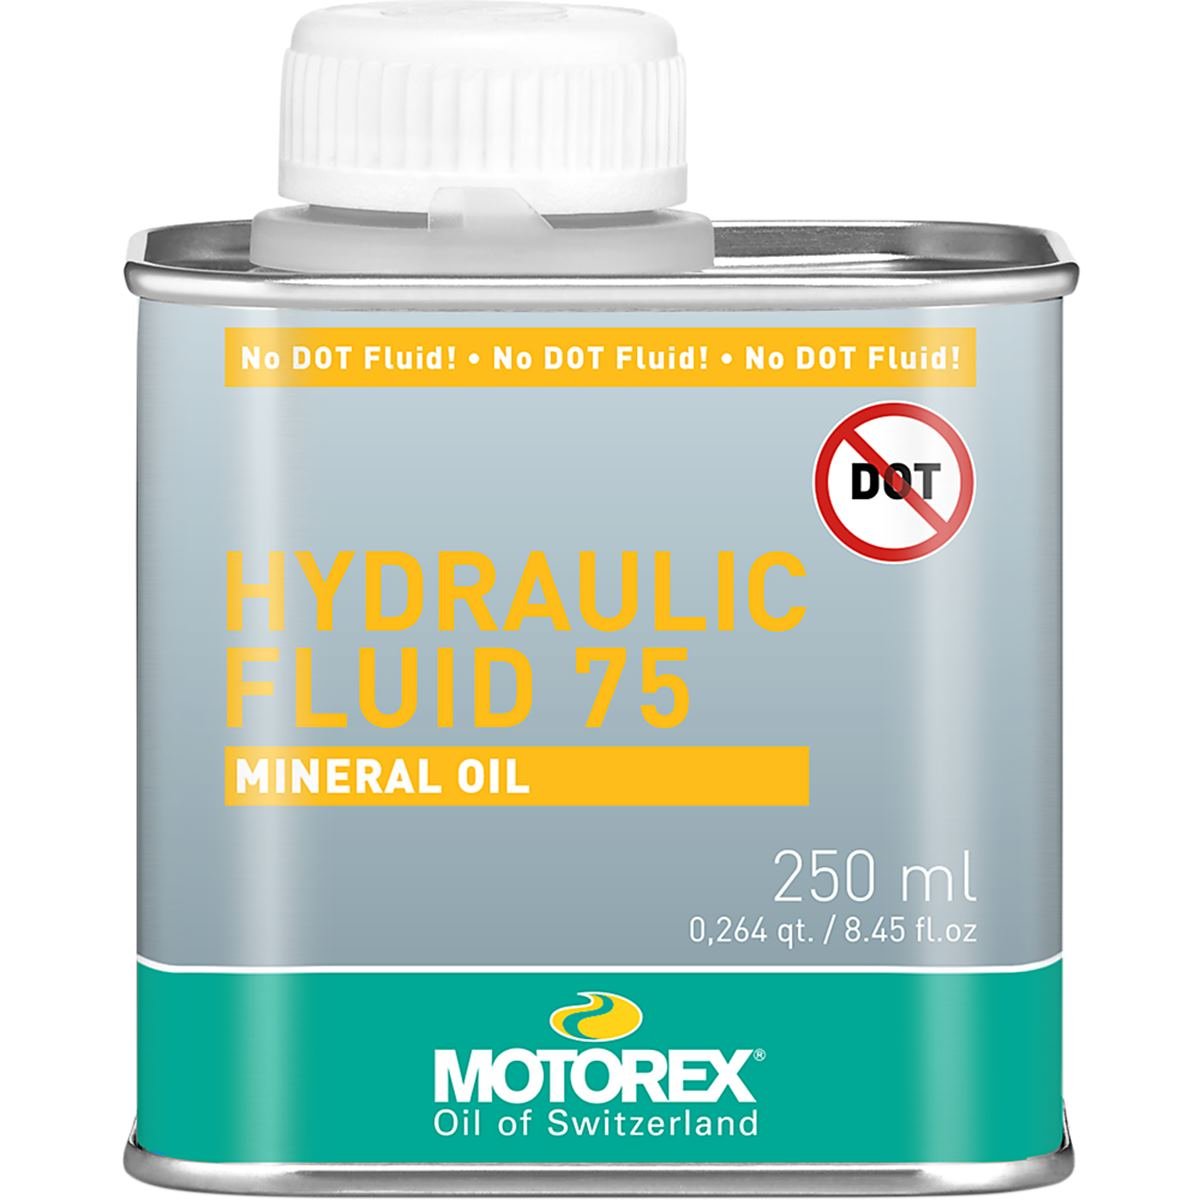 Motorex Mineral Oil Fluid 75 250 ml